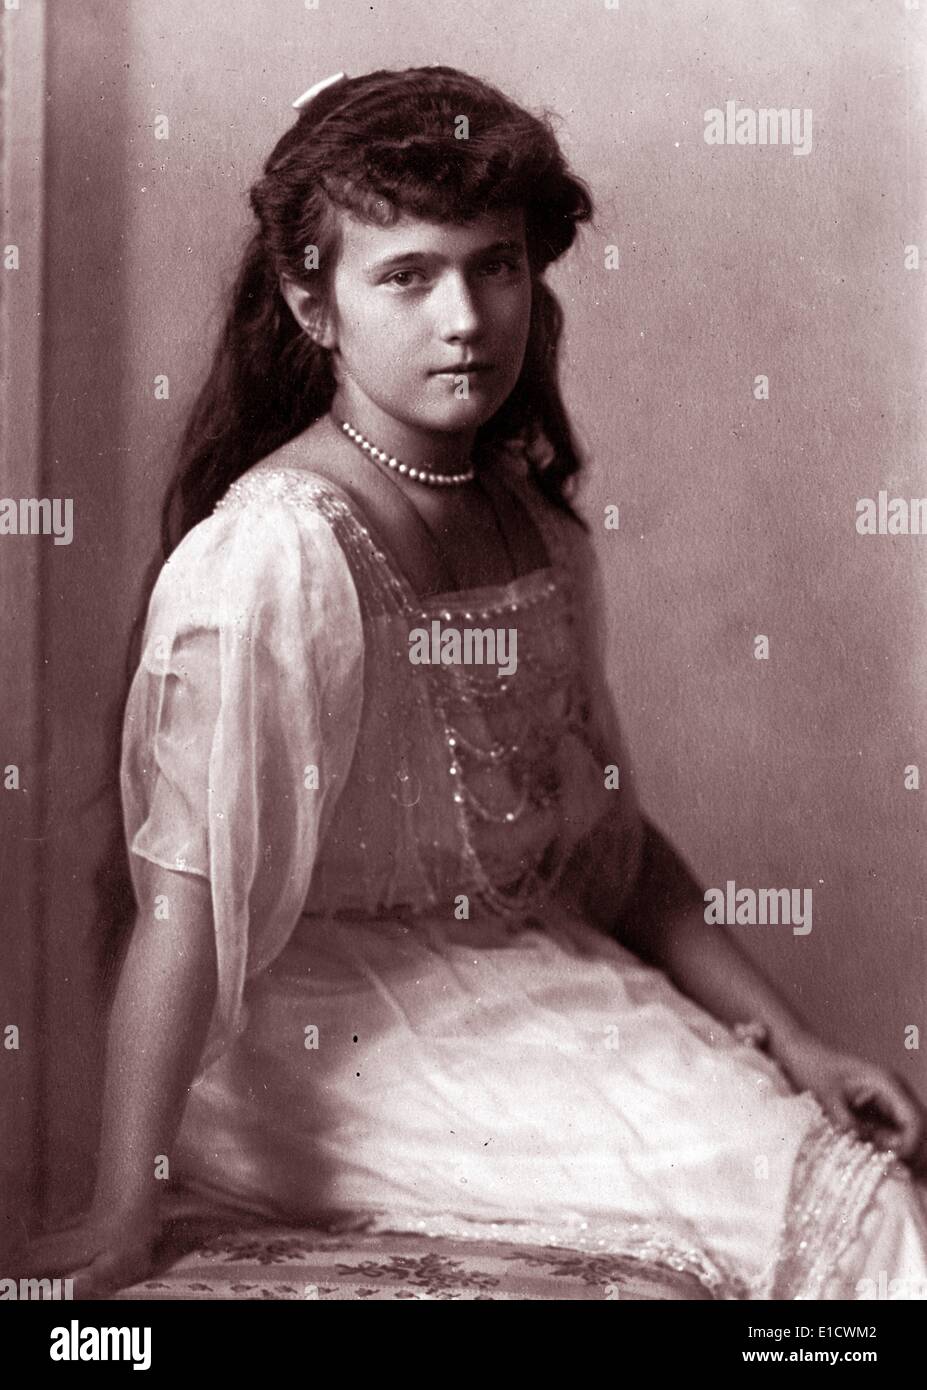 La granduchessa Anastasia Nikolaevna della Russia (18 giugno 1901 - 17 luglio 1918) più giovane figlia dello Zar Nicola II, ultimo sovrano della Russia imperiale, e sua moglie, Tsarina Alexandra Fyodorovna. Foto Stock